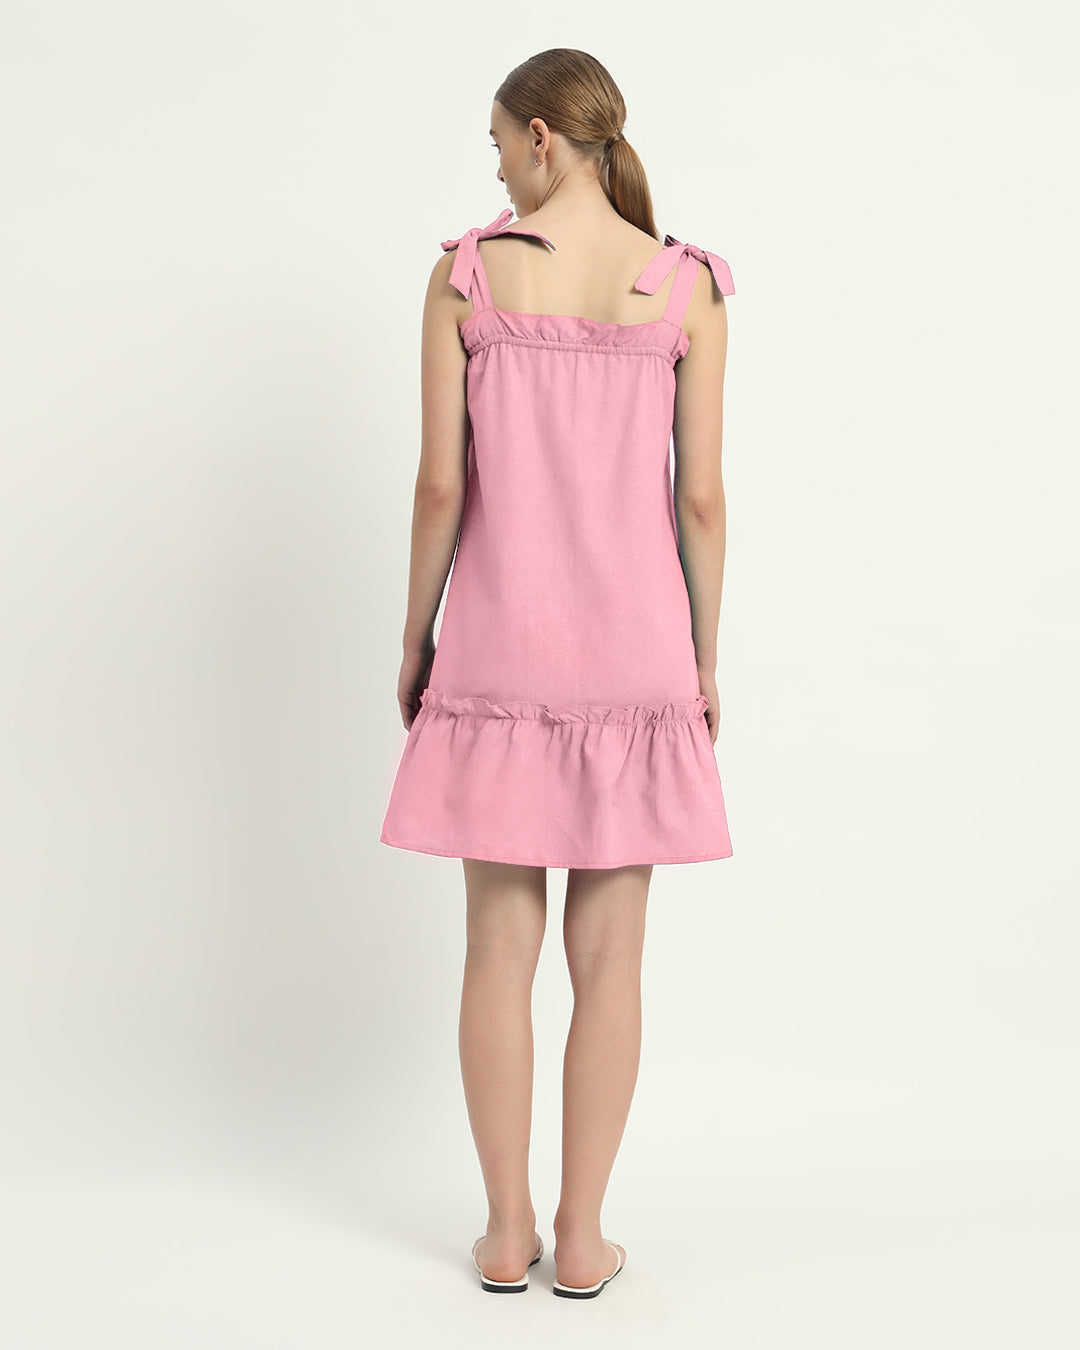 The Amalfi Fondant Pink Cotton Dress